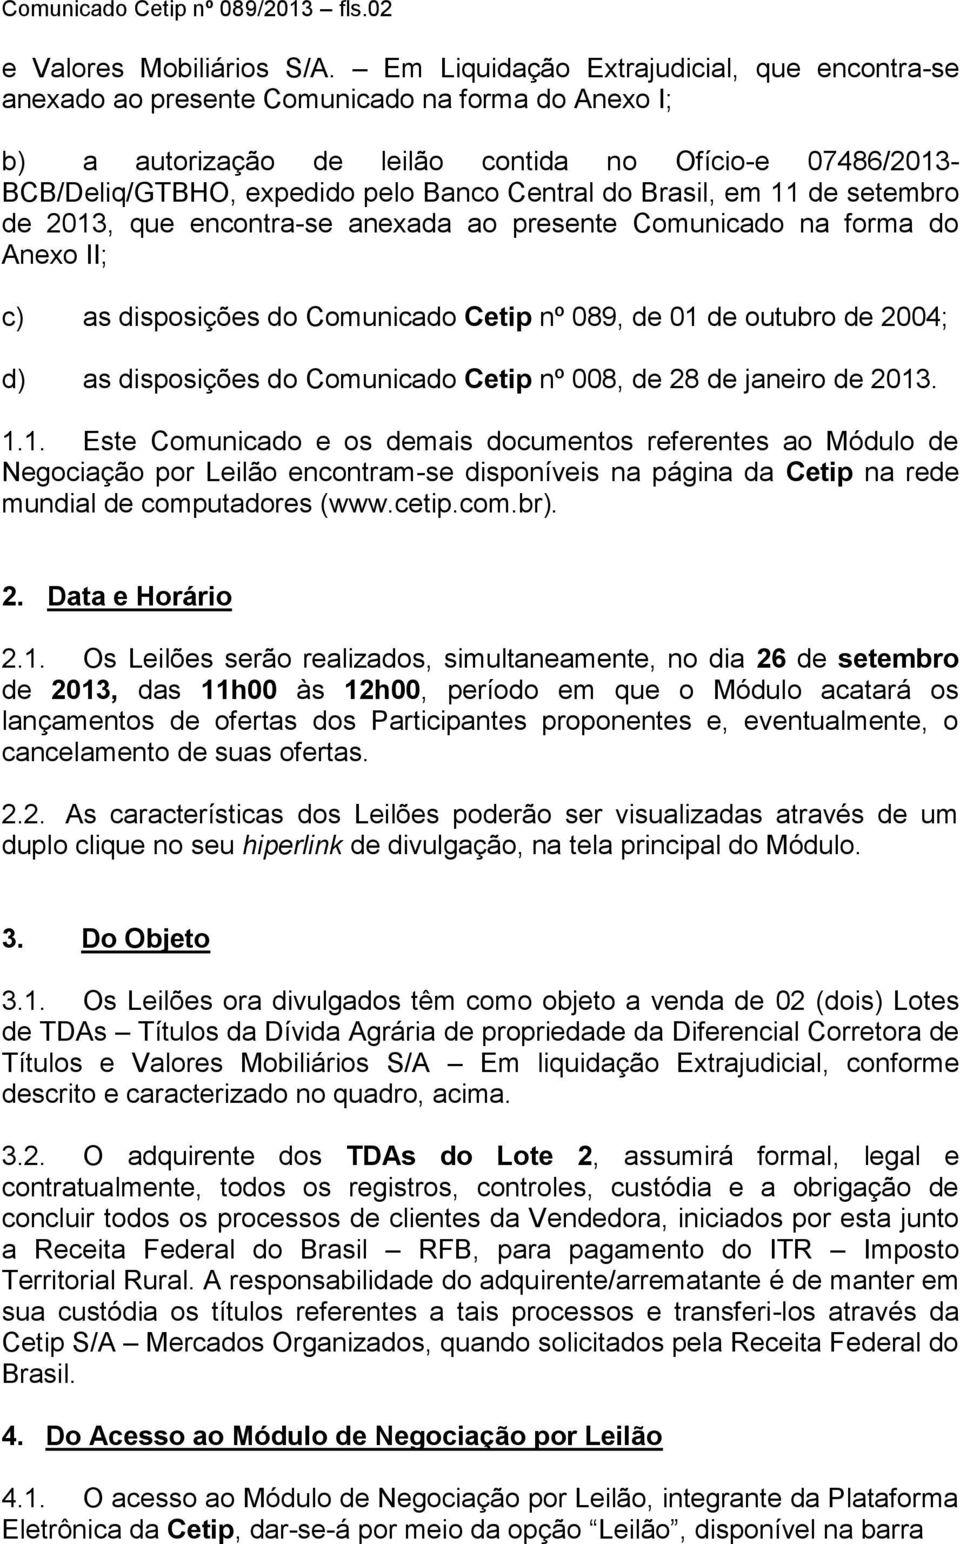 Central do Brasil, em 11 de setembro de 2013, que encontra-se anexada ao presente Comunicado na forma do Anexo II; c) as disposições do Comunicado Cetip nº 089, de 01 de outubro de 2004; d) as